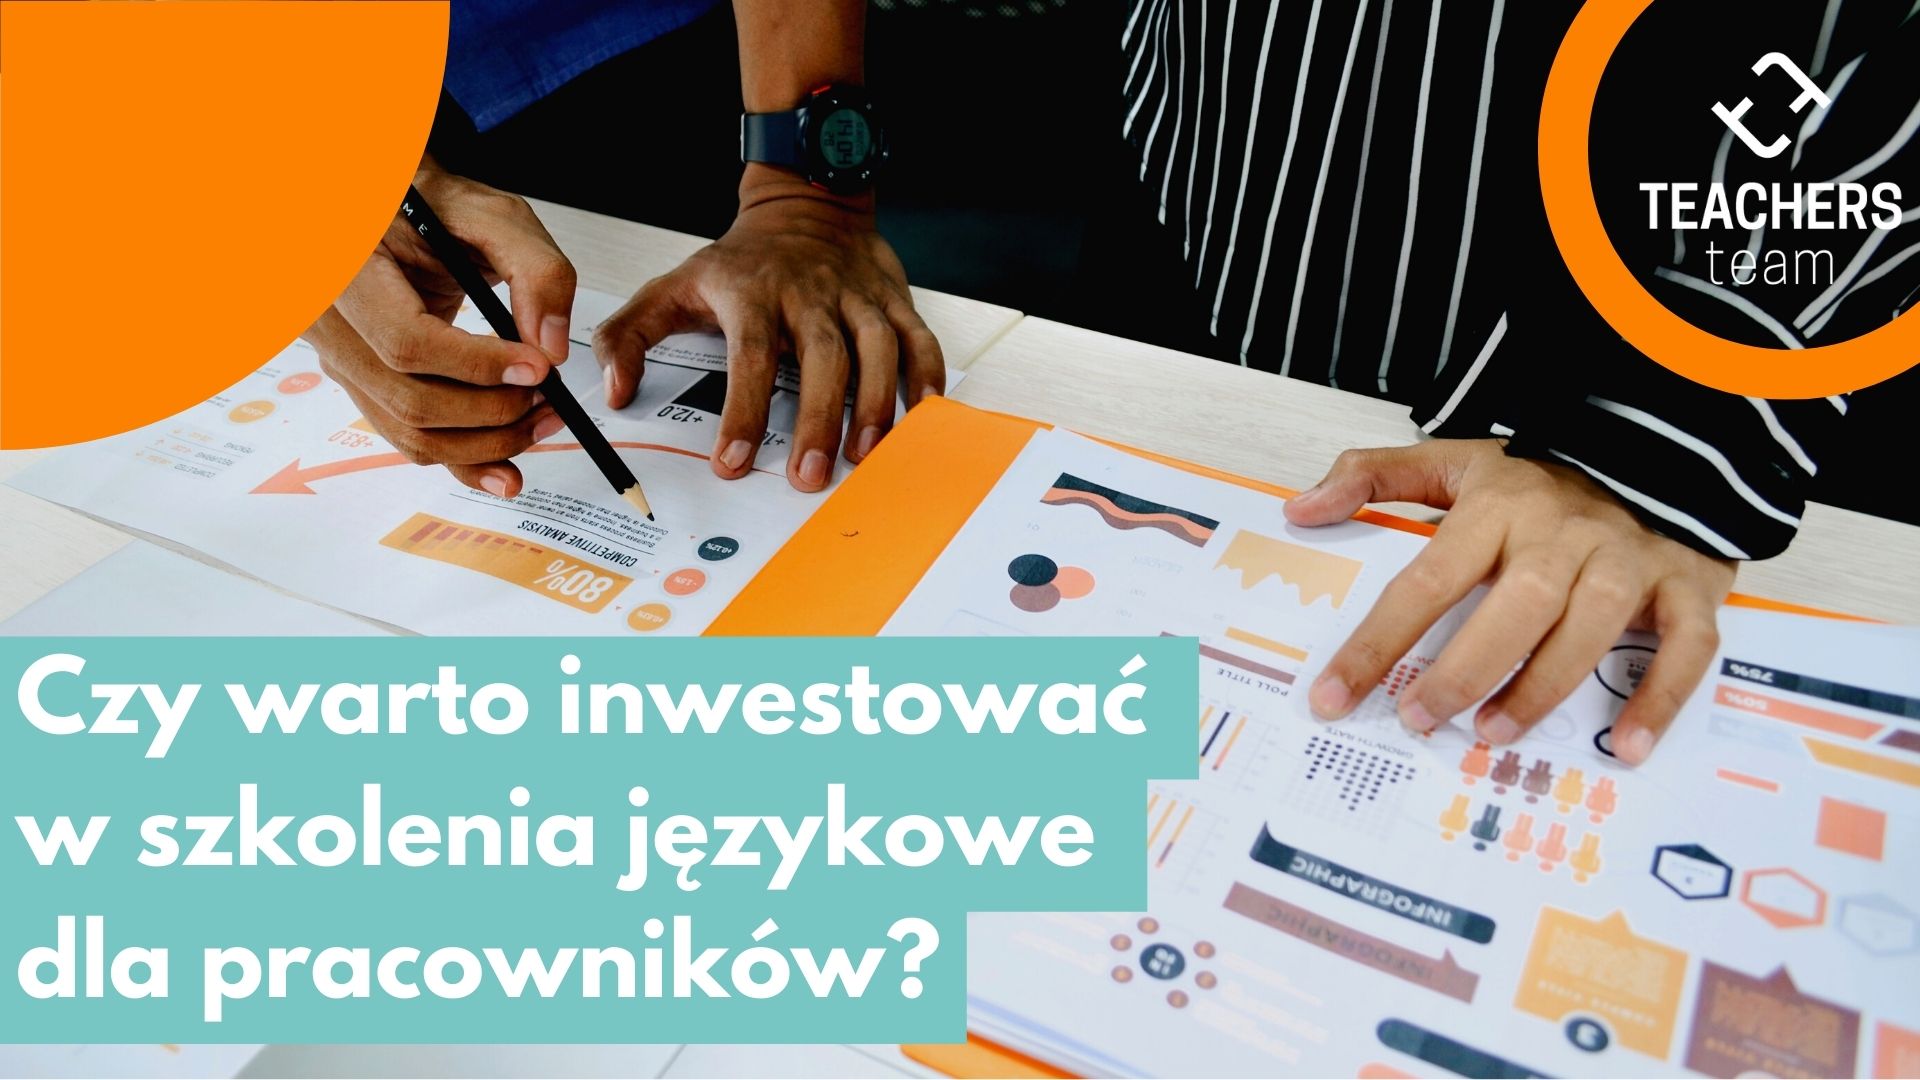 Czy warto inwestować w szkolenia językowe dla pracowników? Artykuł na blogu TEACHERSteam.pl